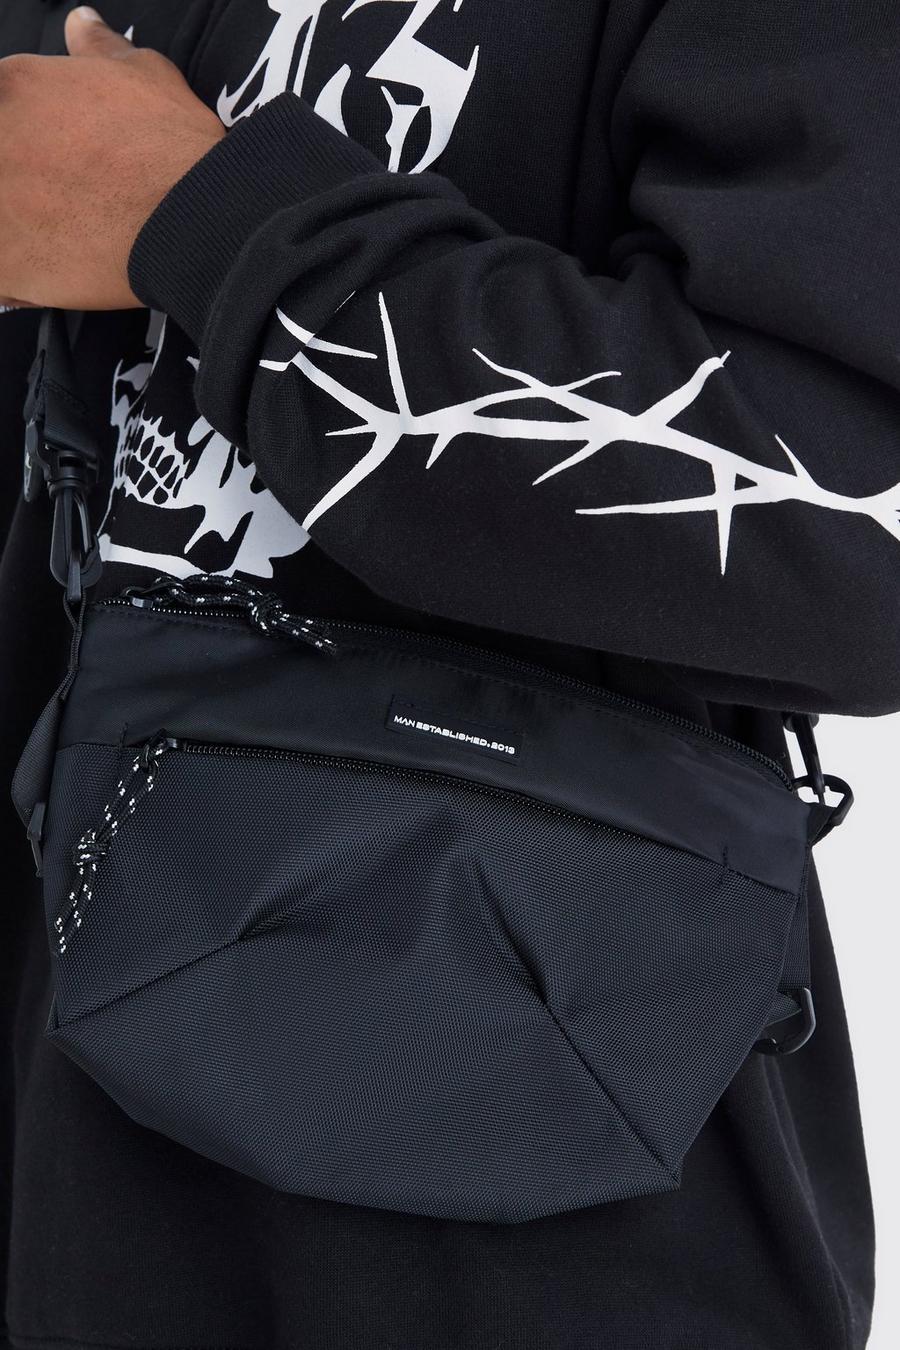 Carhartt WIP PAYTON HIP BAG UNISEX - Across body bag - black/white